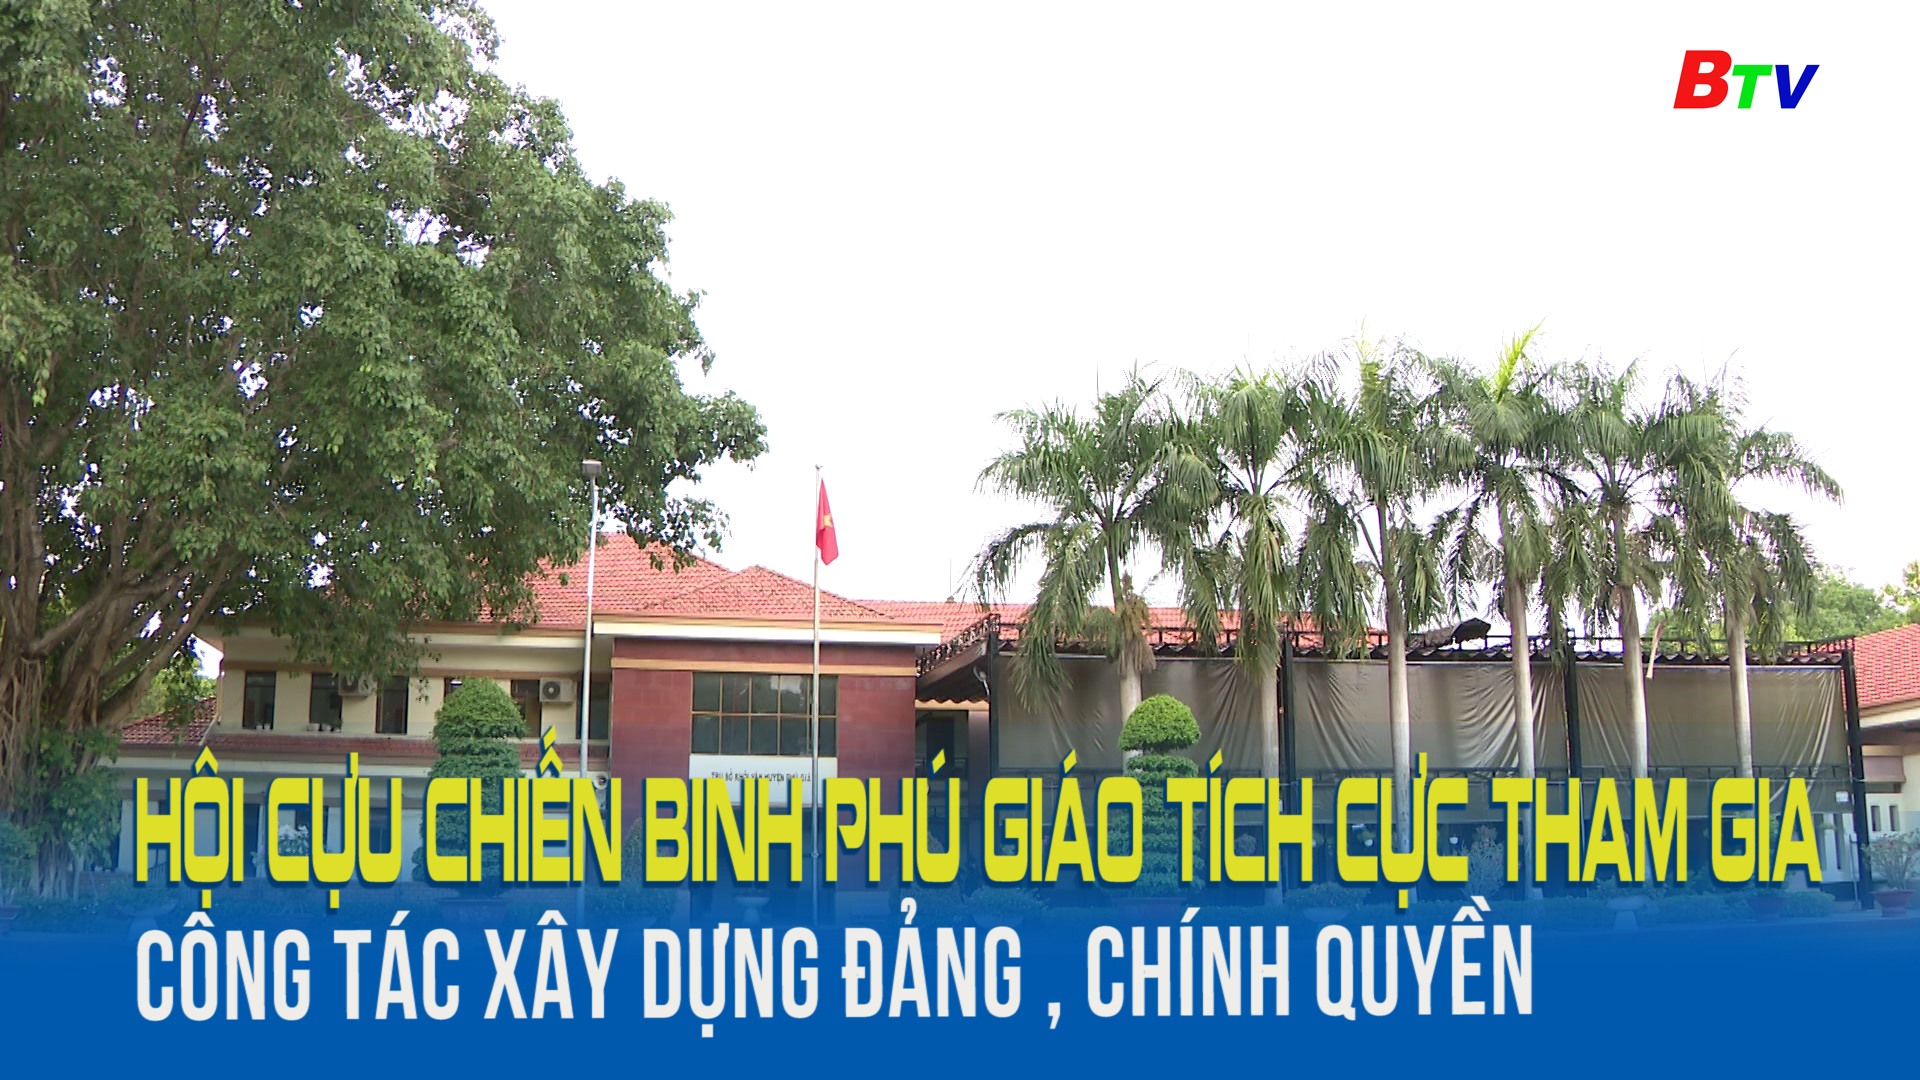 Hội cựu chiến binh Phú Giáo tích cực tham gia công tác xây dựng Đảng, chính quyền